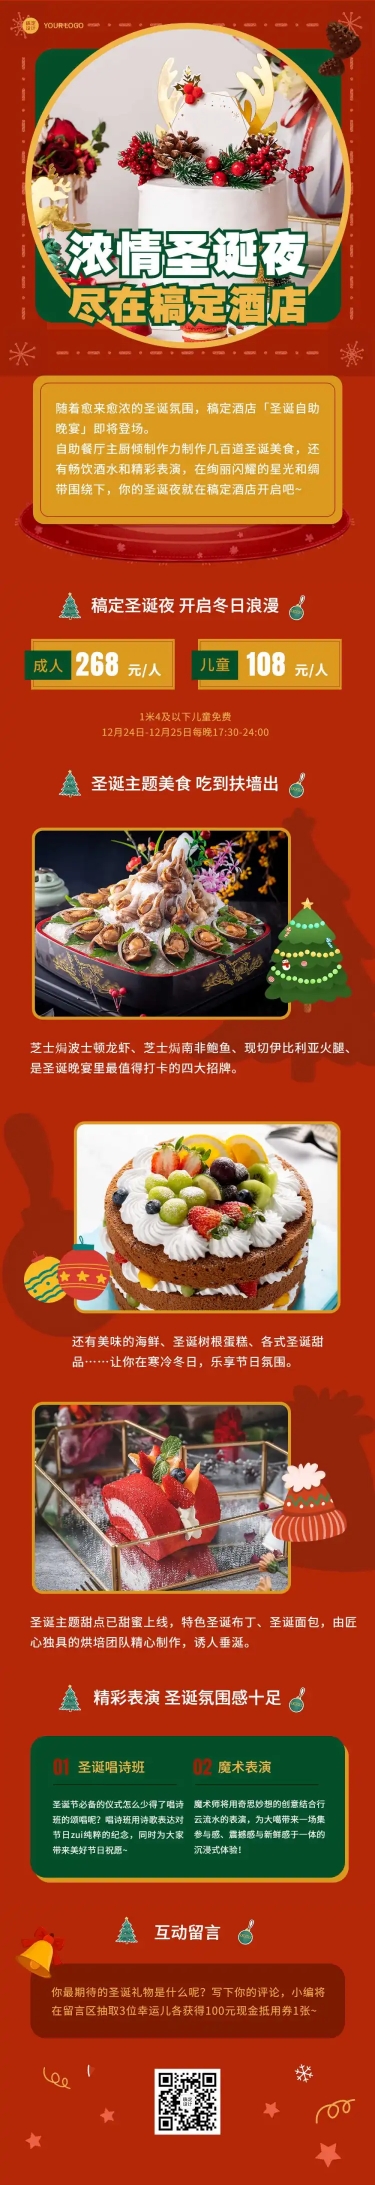 圣诞节餐饮美食营销实景手机长图